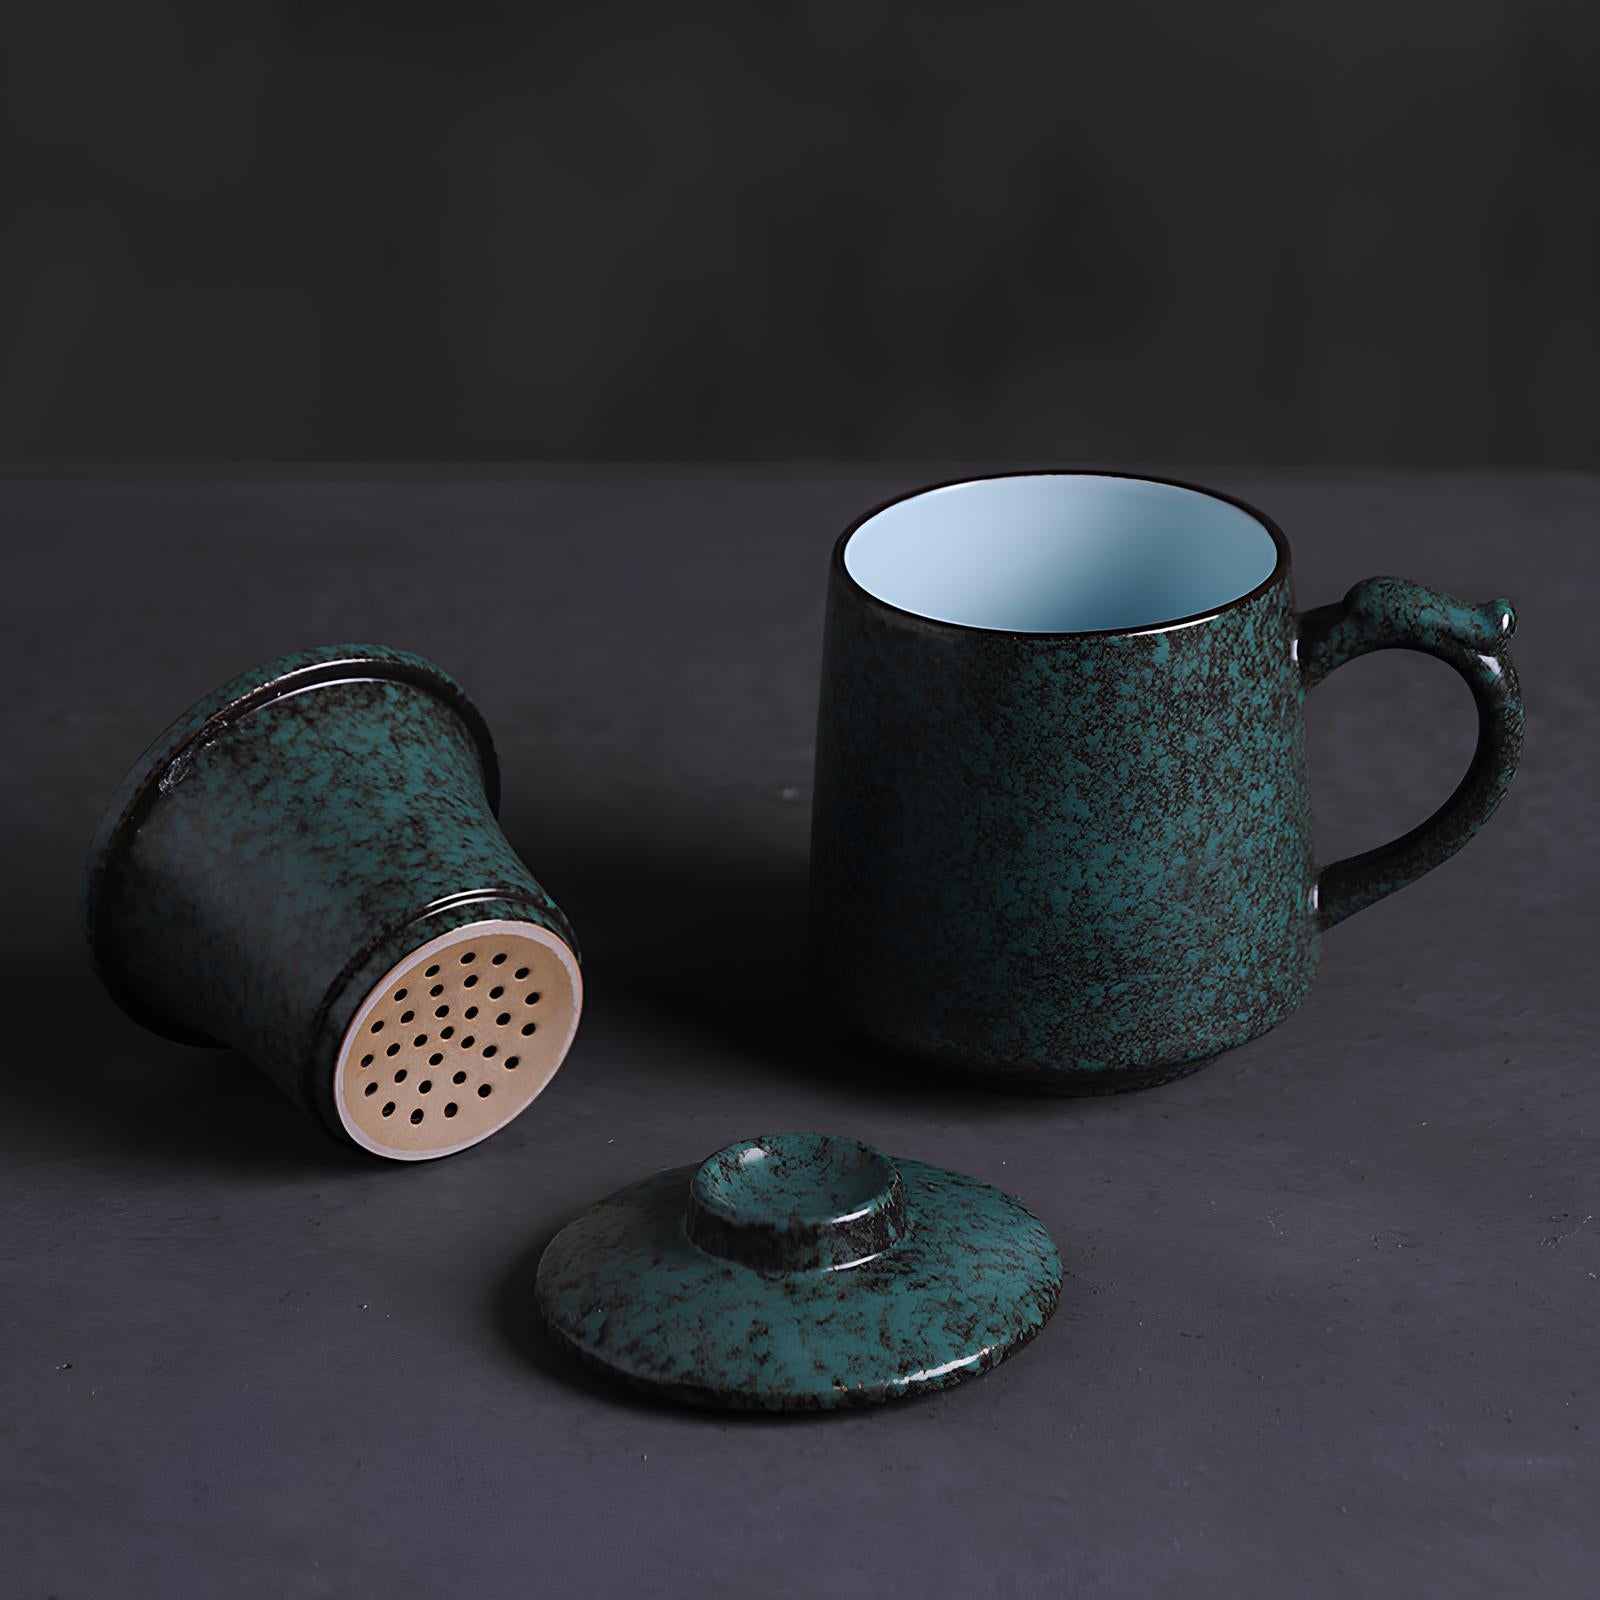 Mug en céramique avec infuseur de thé - UstensilesCulinaires